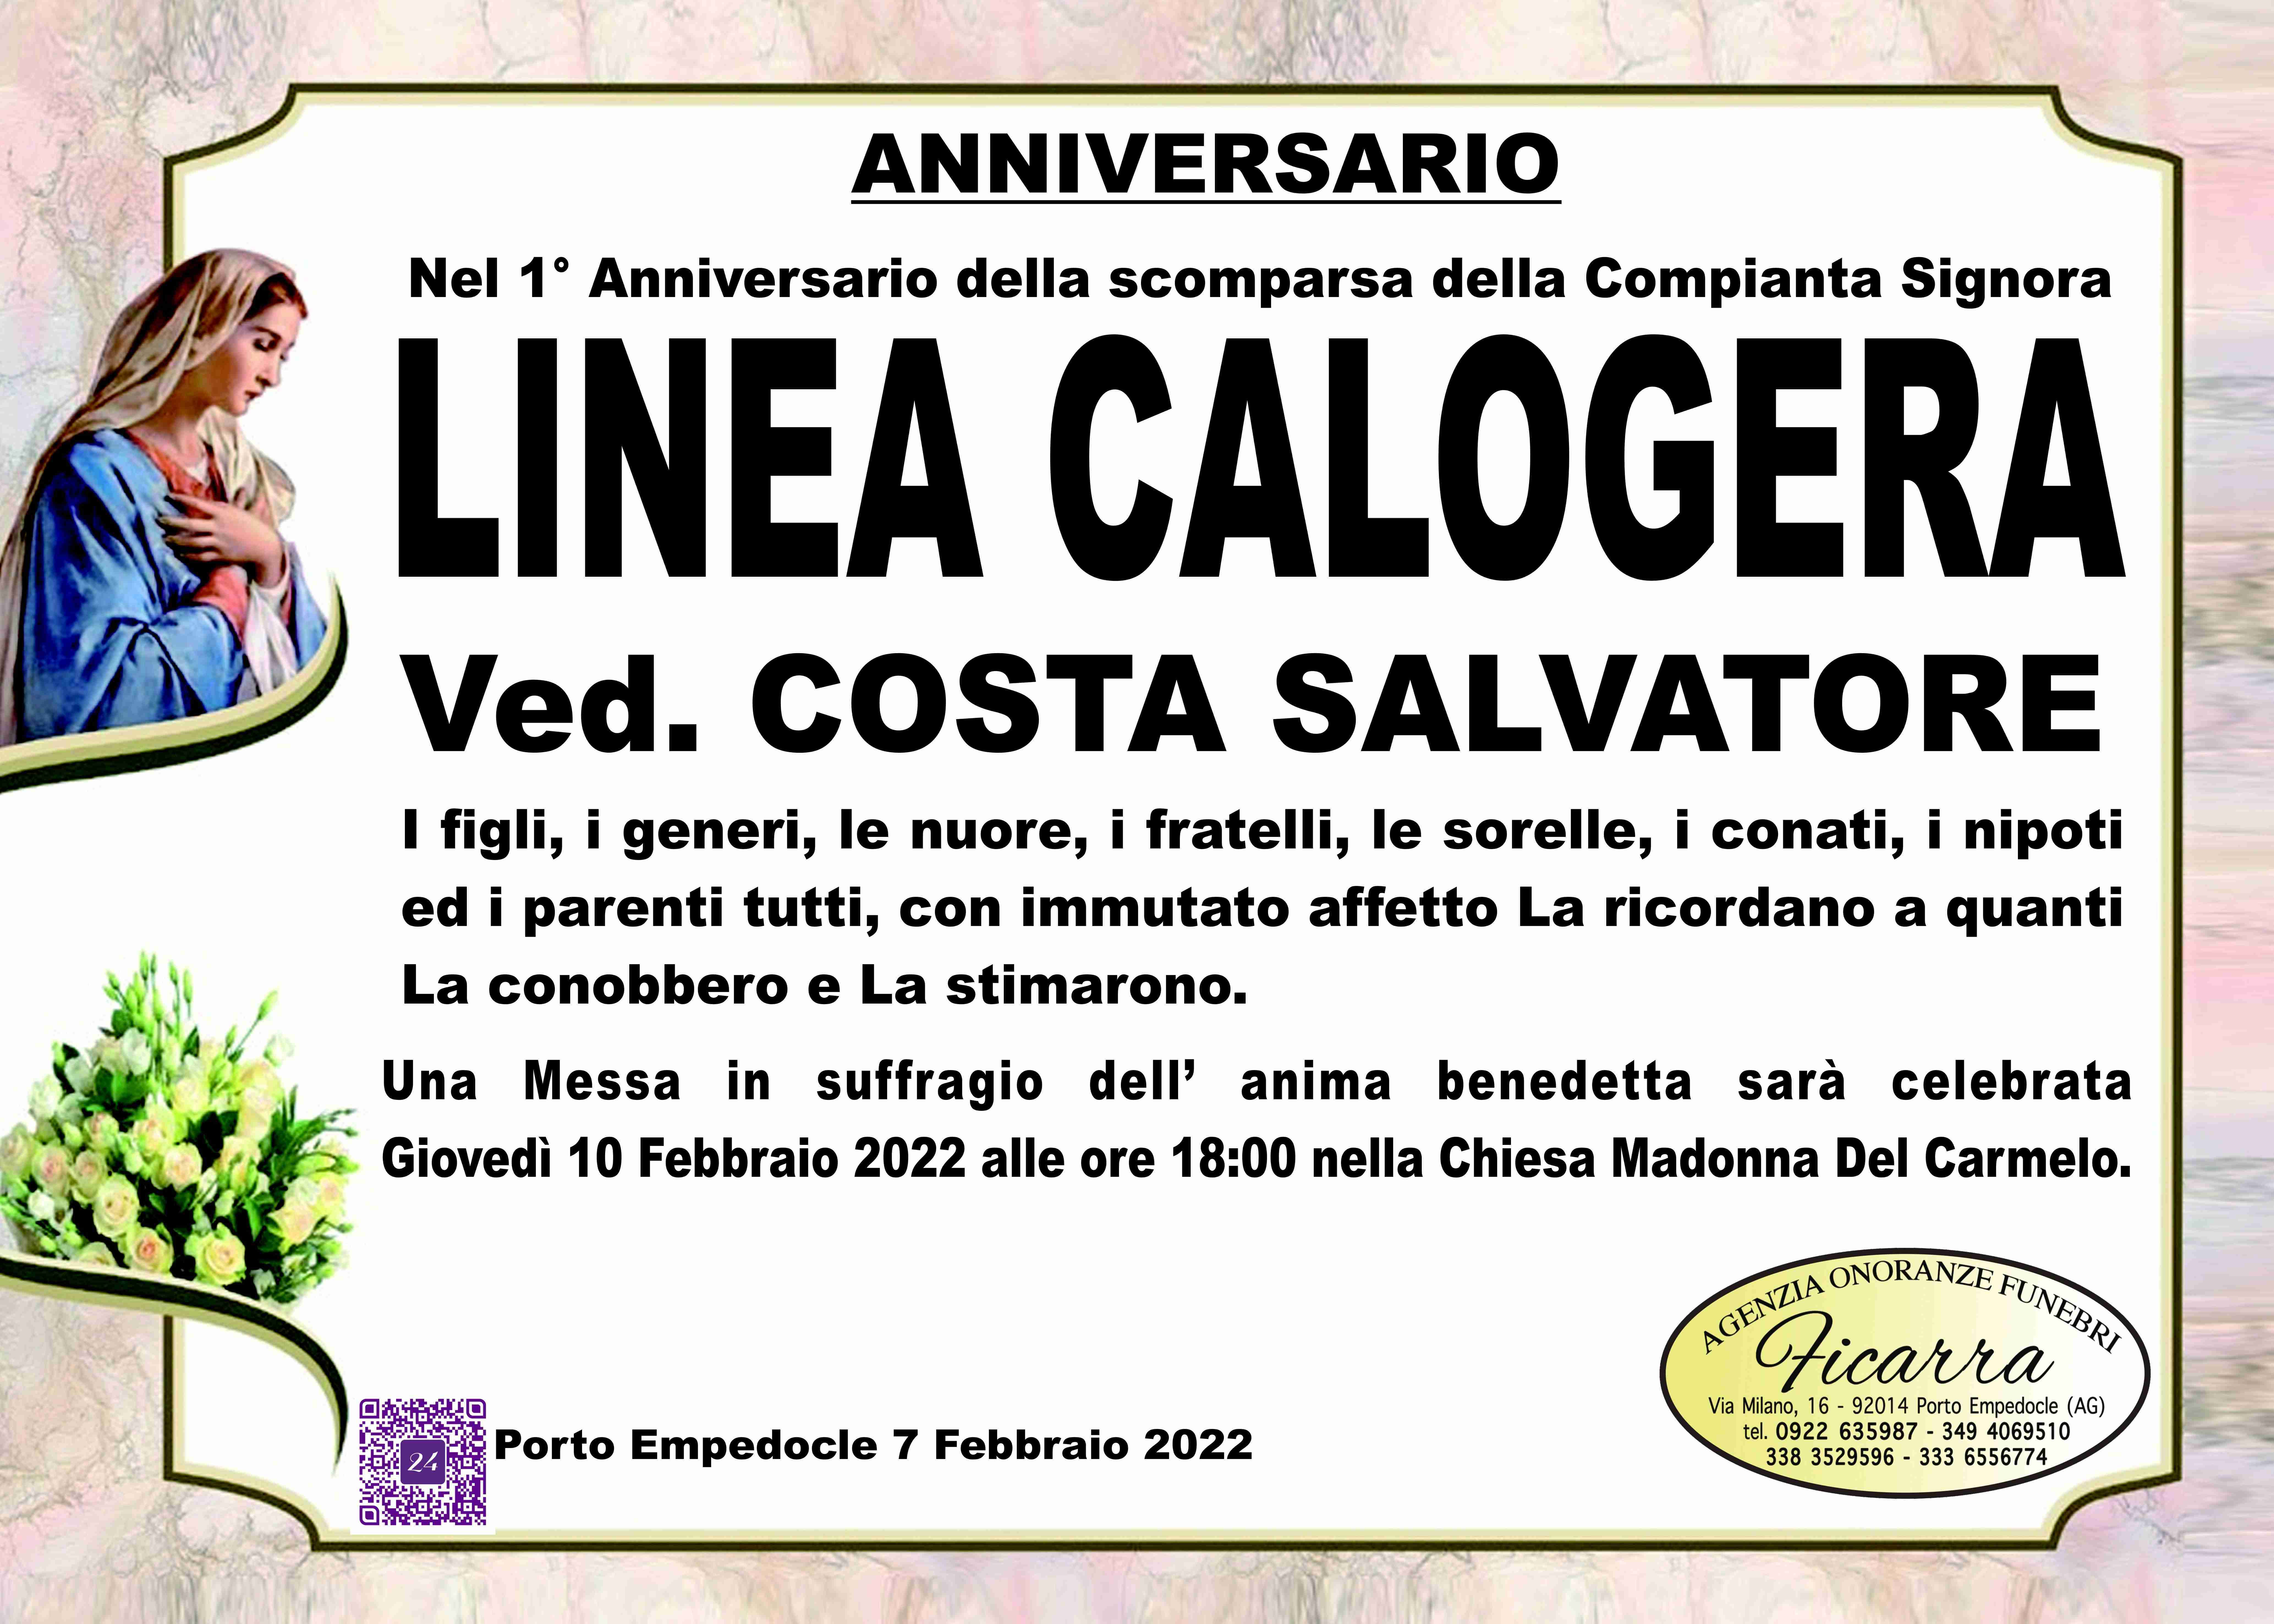 Calogera Linea